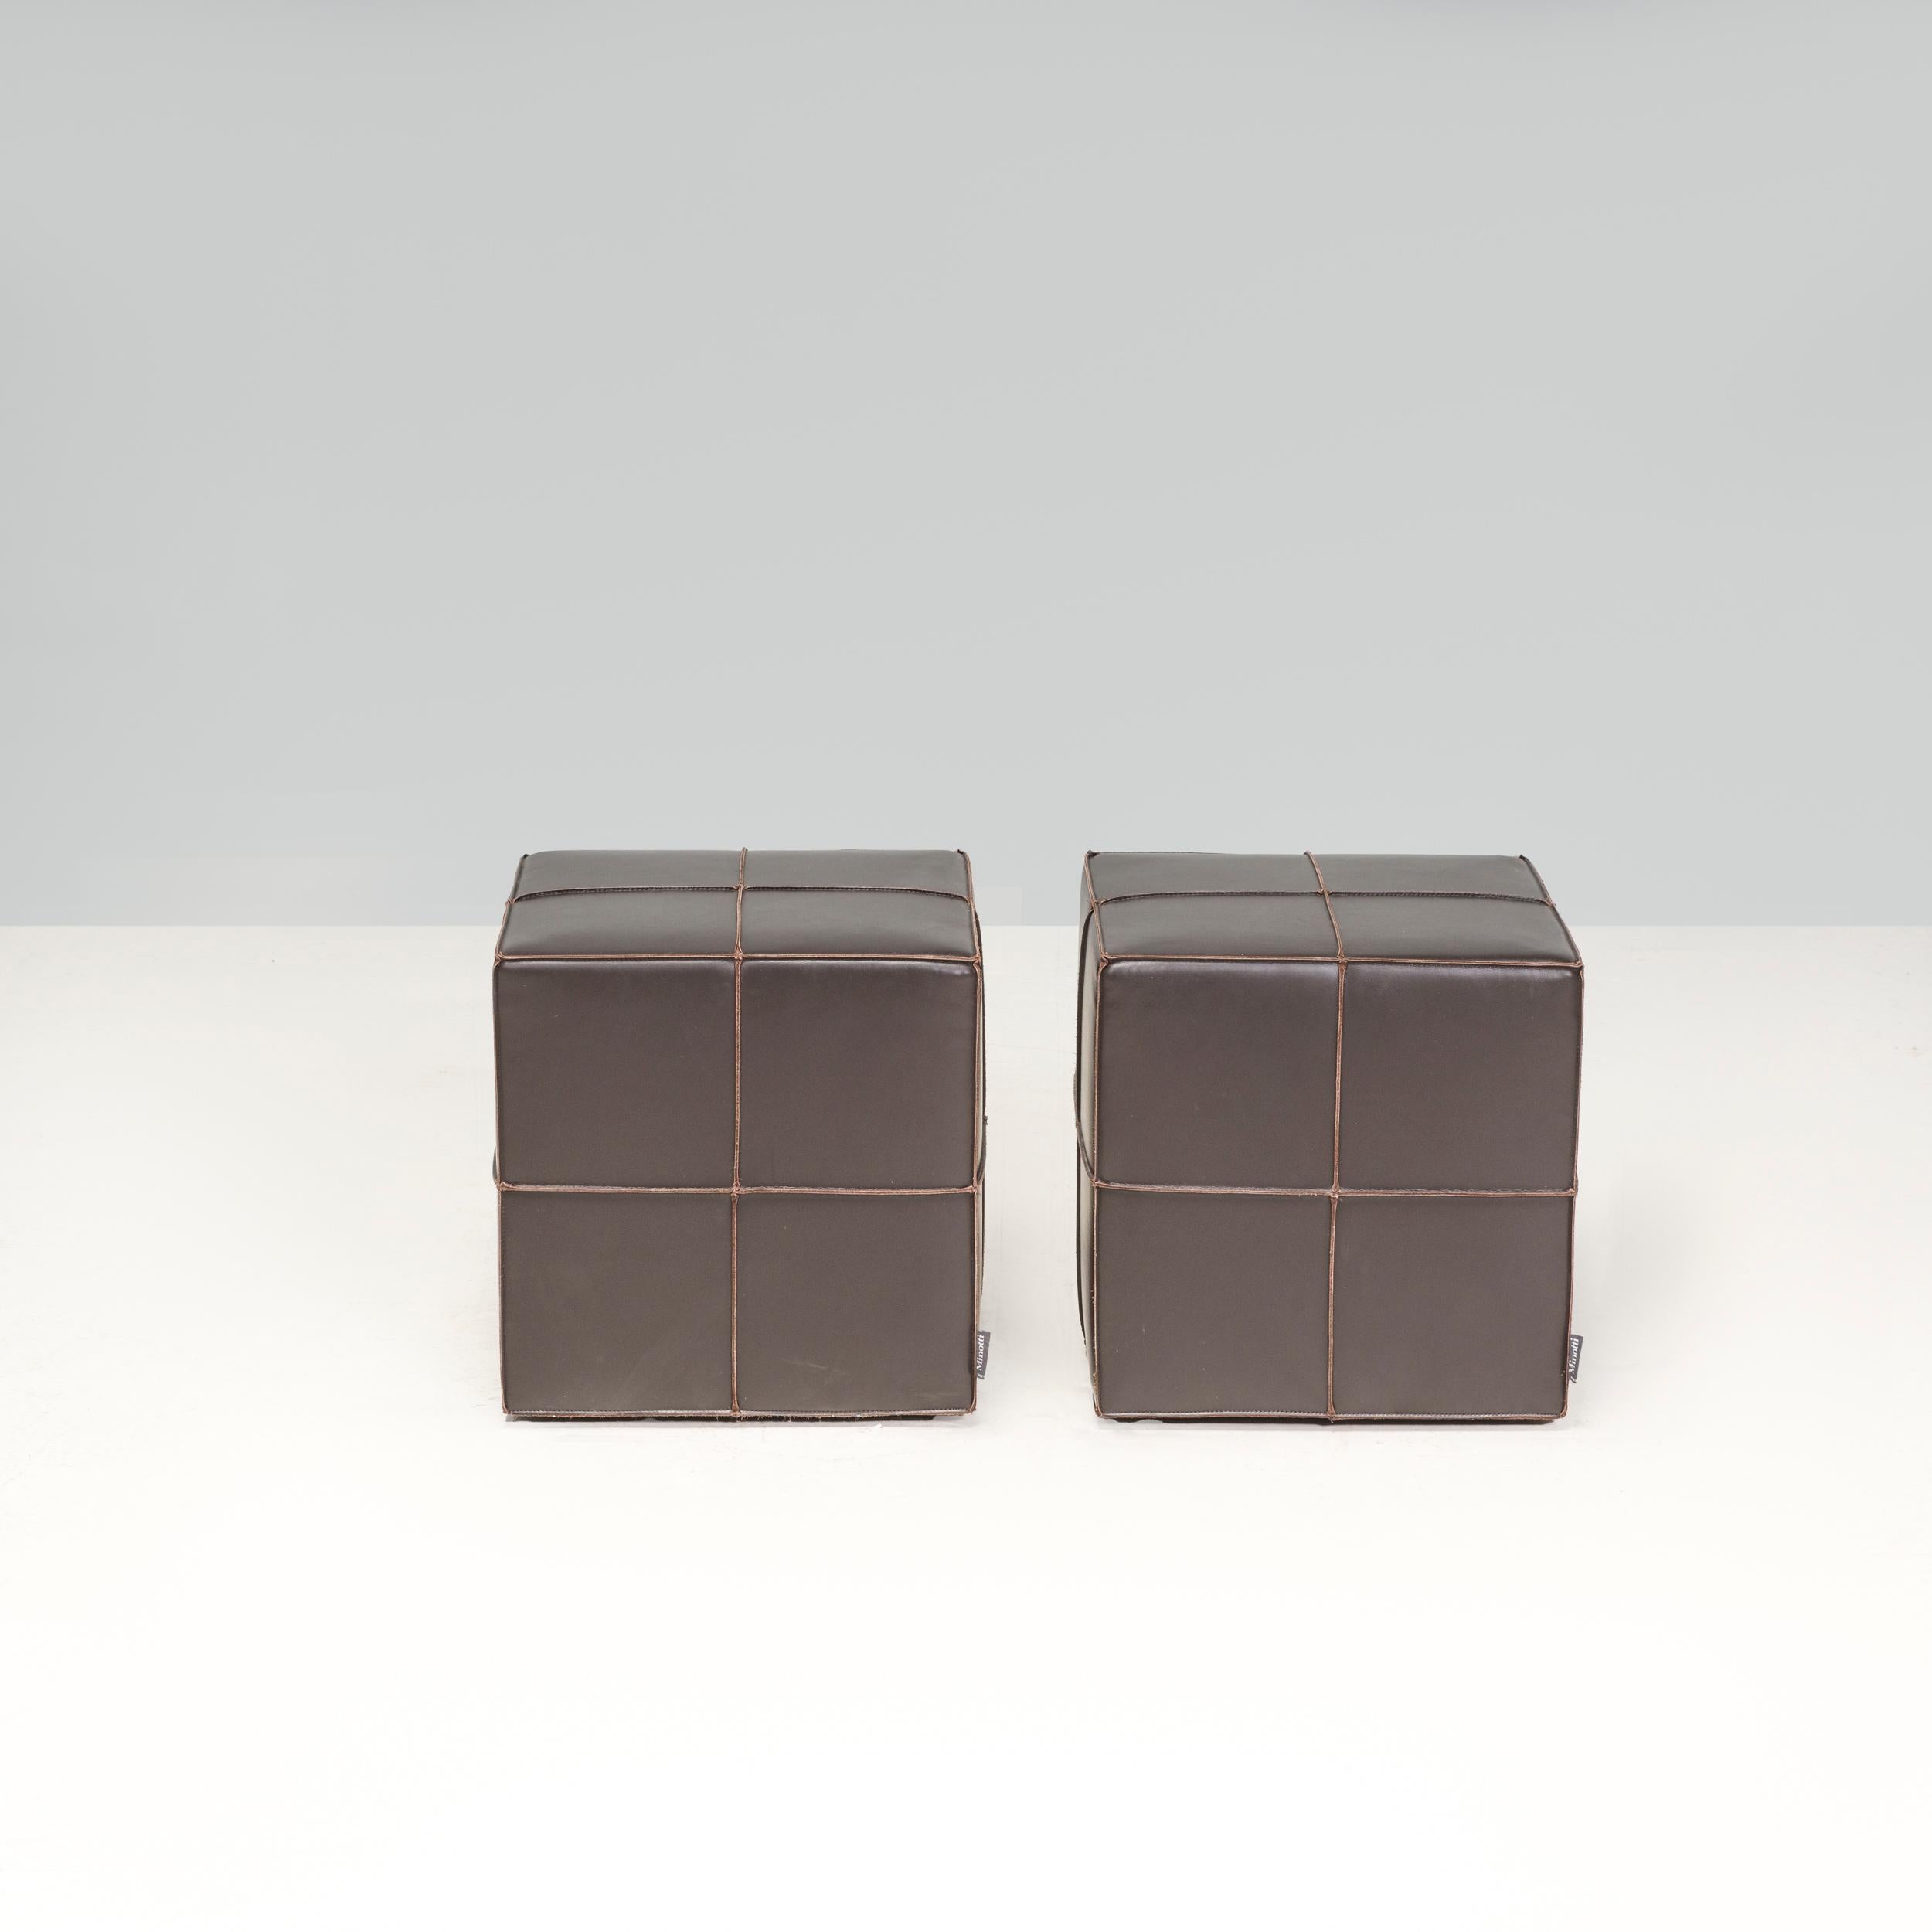 Conçue à l'origine par Rodolfo Dordoni en 1998 et fabriquée par Minotti, cette paire de poufs Villon est un exemple fantastique du design italien des années 1990. 

Fabriqués en contreplaqué recouvert de mousse et revêtus de cuir marron souple, les